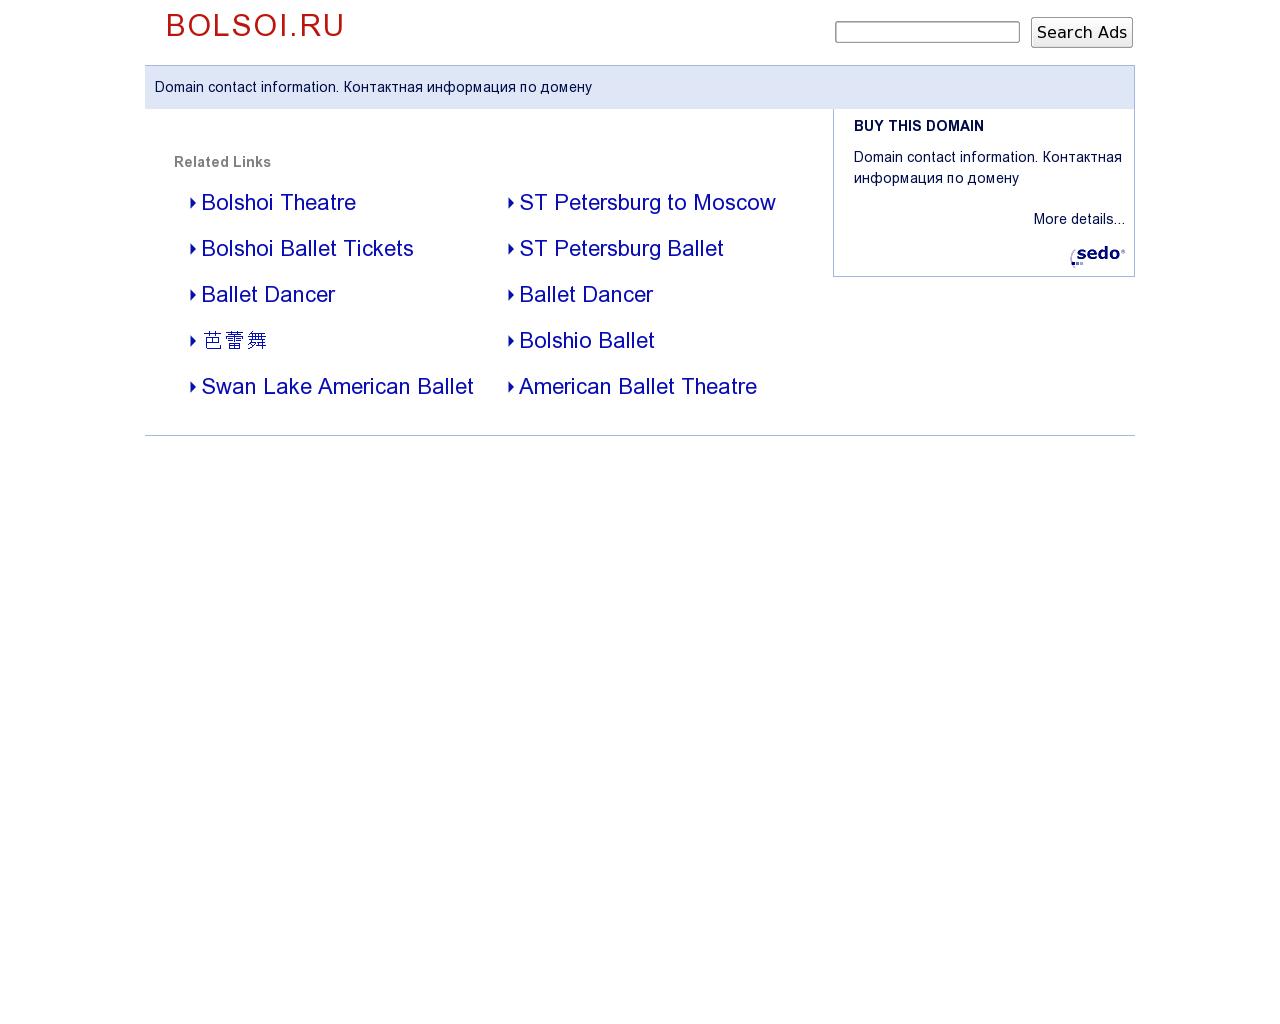 Изображение сайта bolsoi.ru в разрешении 1280x1024